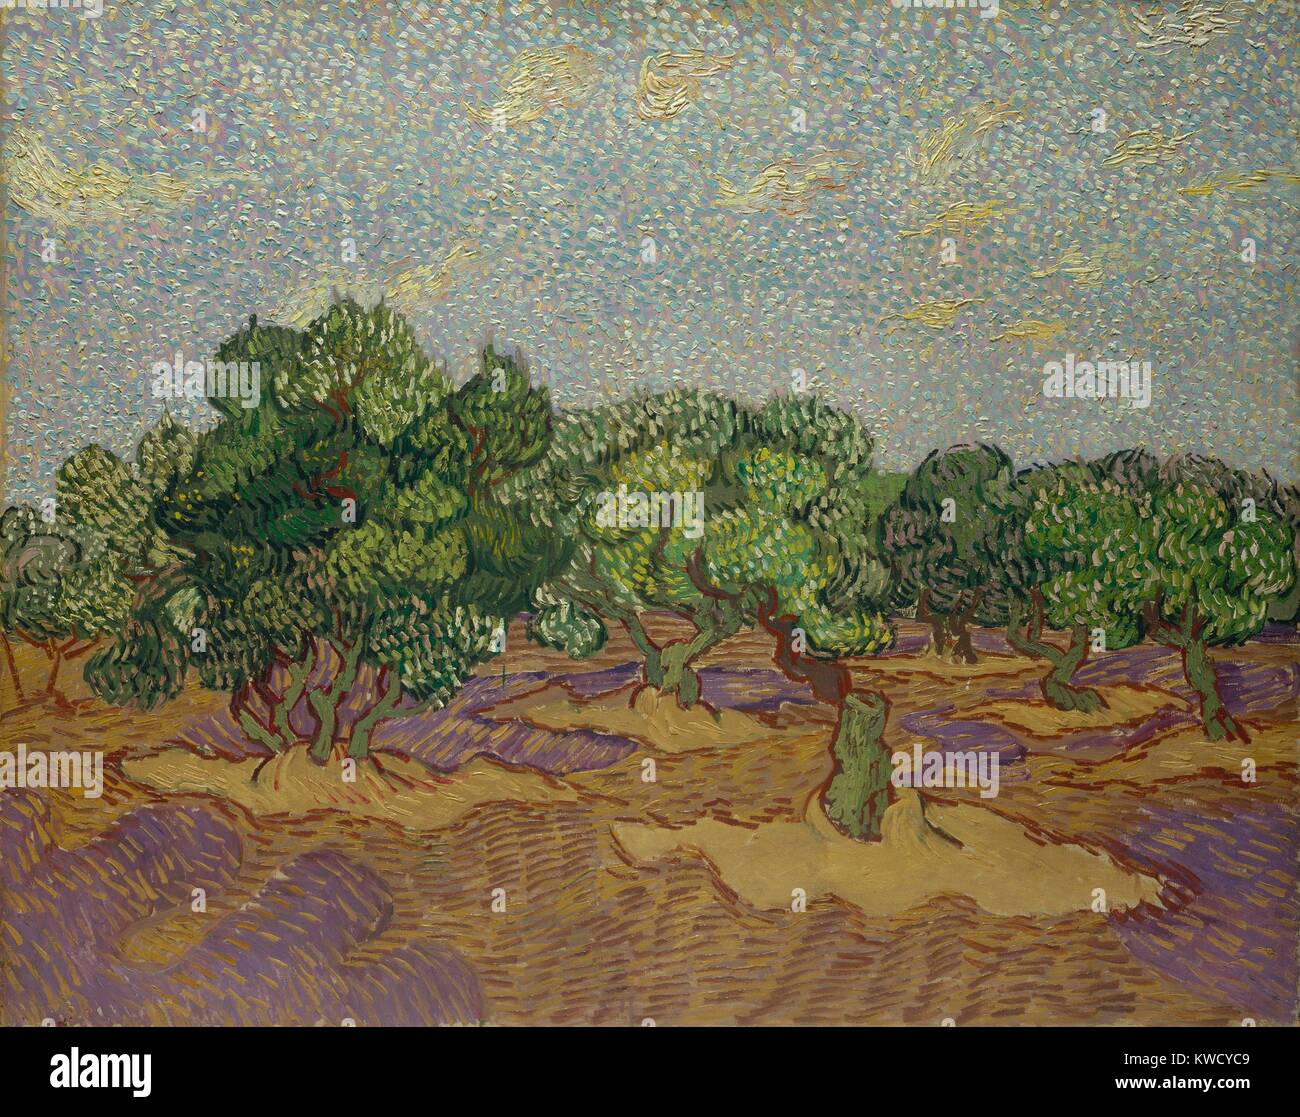 Olivos, de Vincent Van Gogh, 1889, holandés postimpresionista, óleo sobre lienzo. La obra fue pintada directamente de la naturaleza, pero en una forma altamente estilizados, incorporando puntillista color roto (BSLOC 2017 5 52) Foto de stock